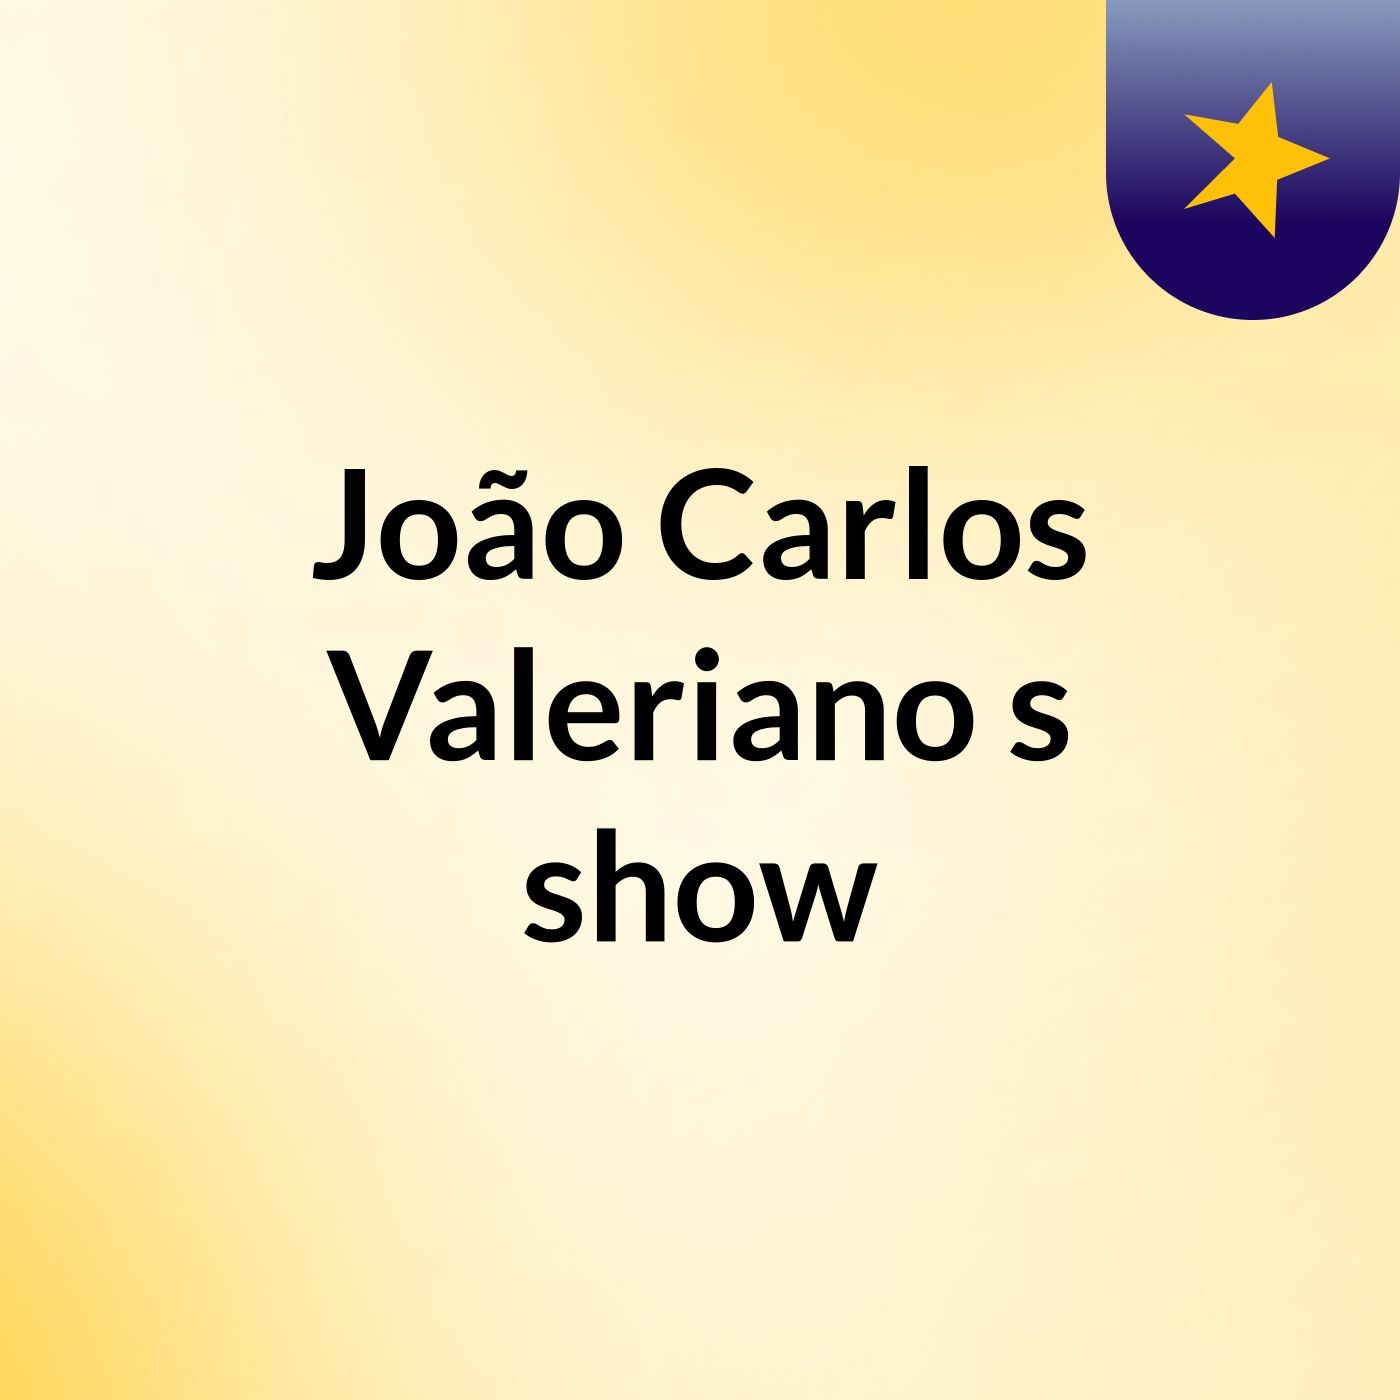 João Carlos Valeriano's show